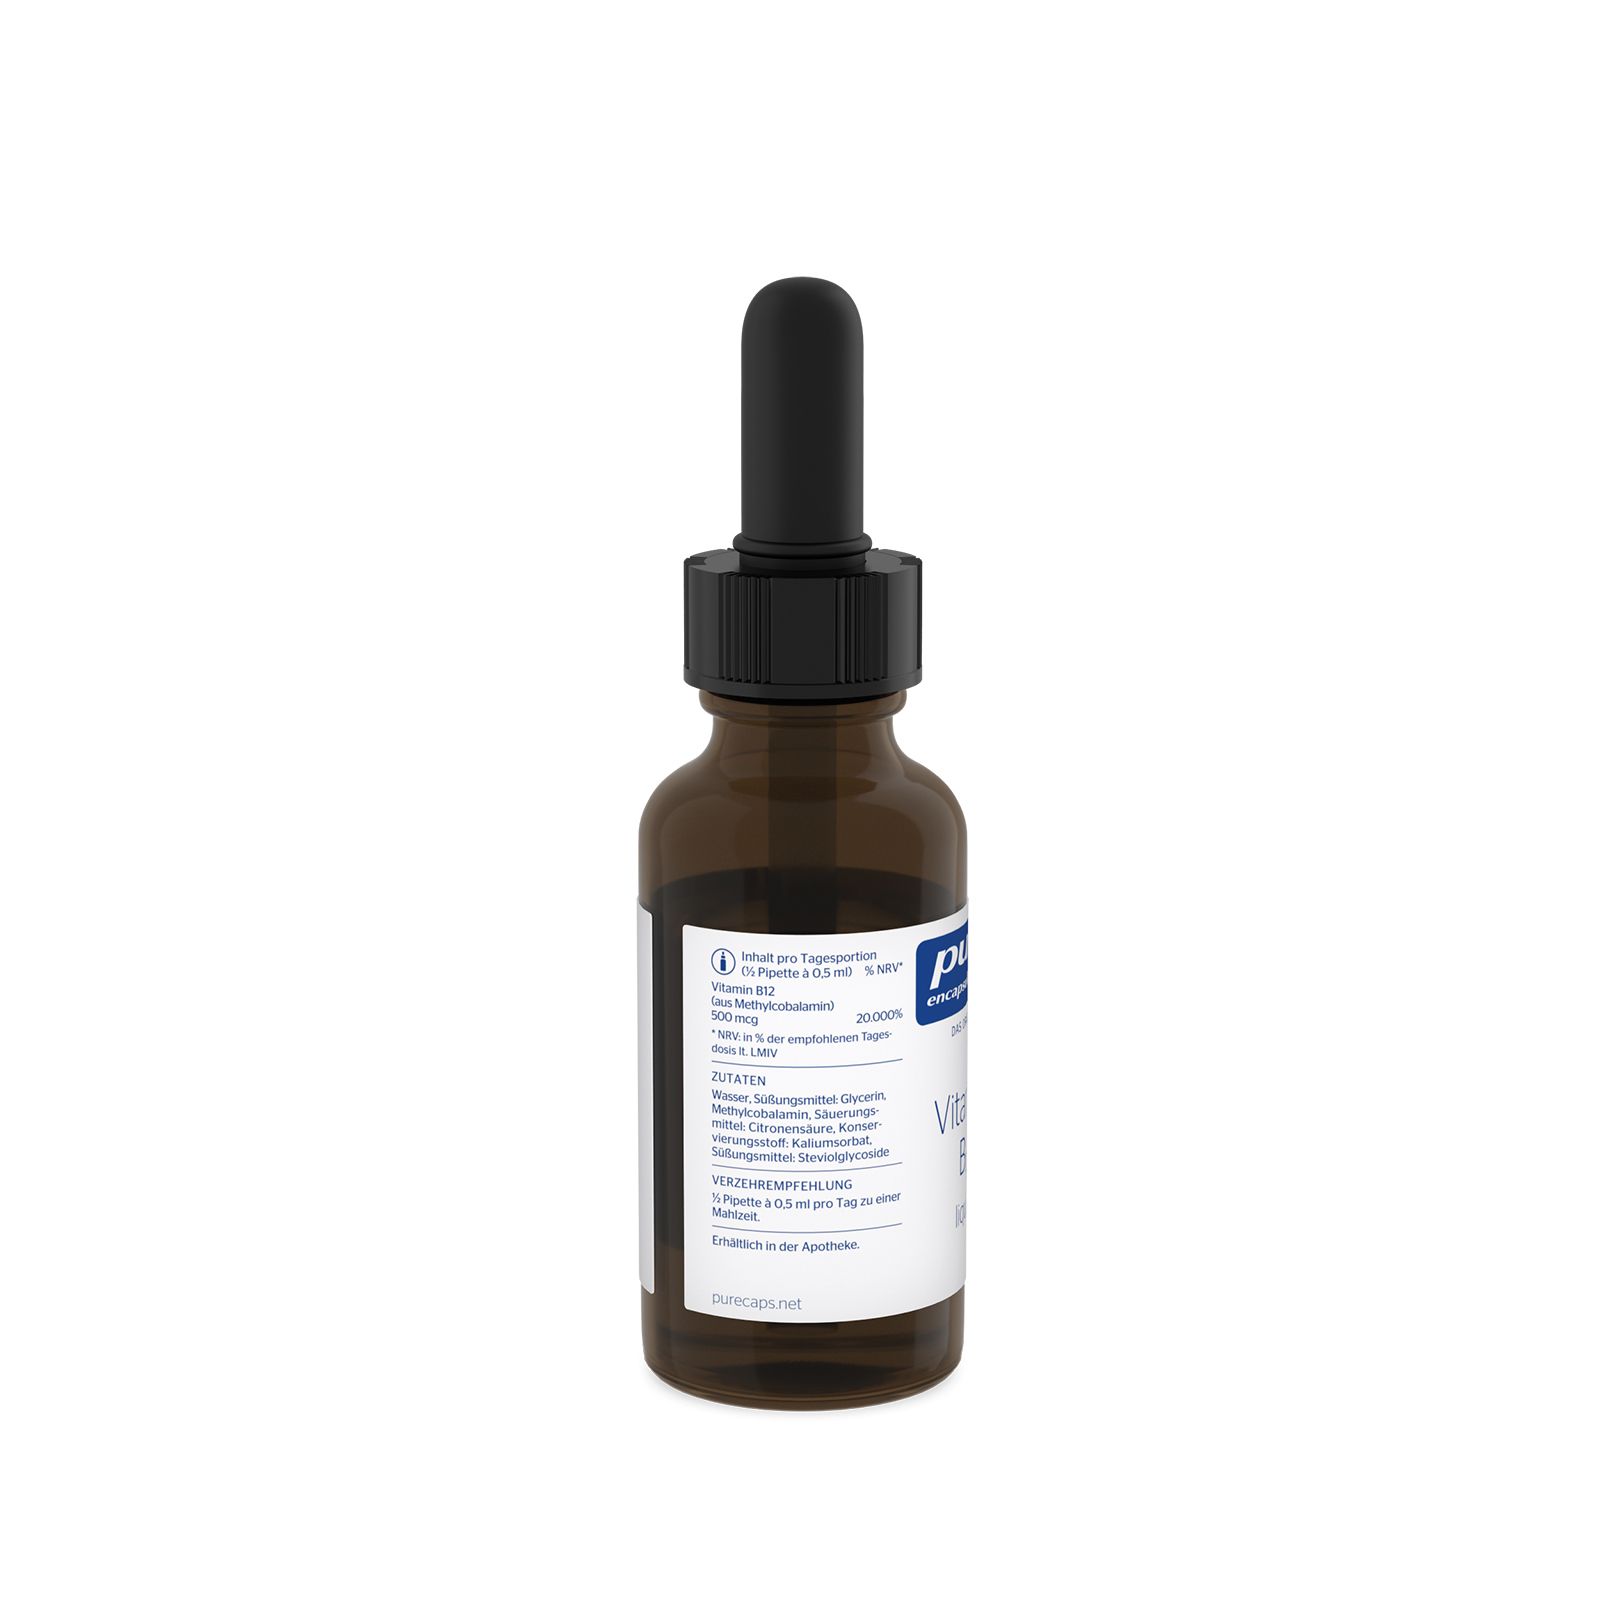 Pure Encapsulations® Vitamin B12 liquid